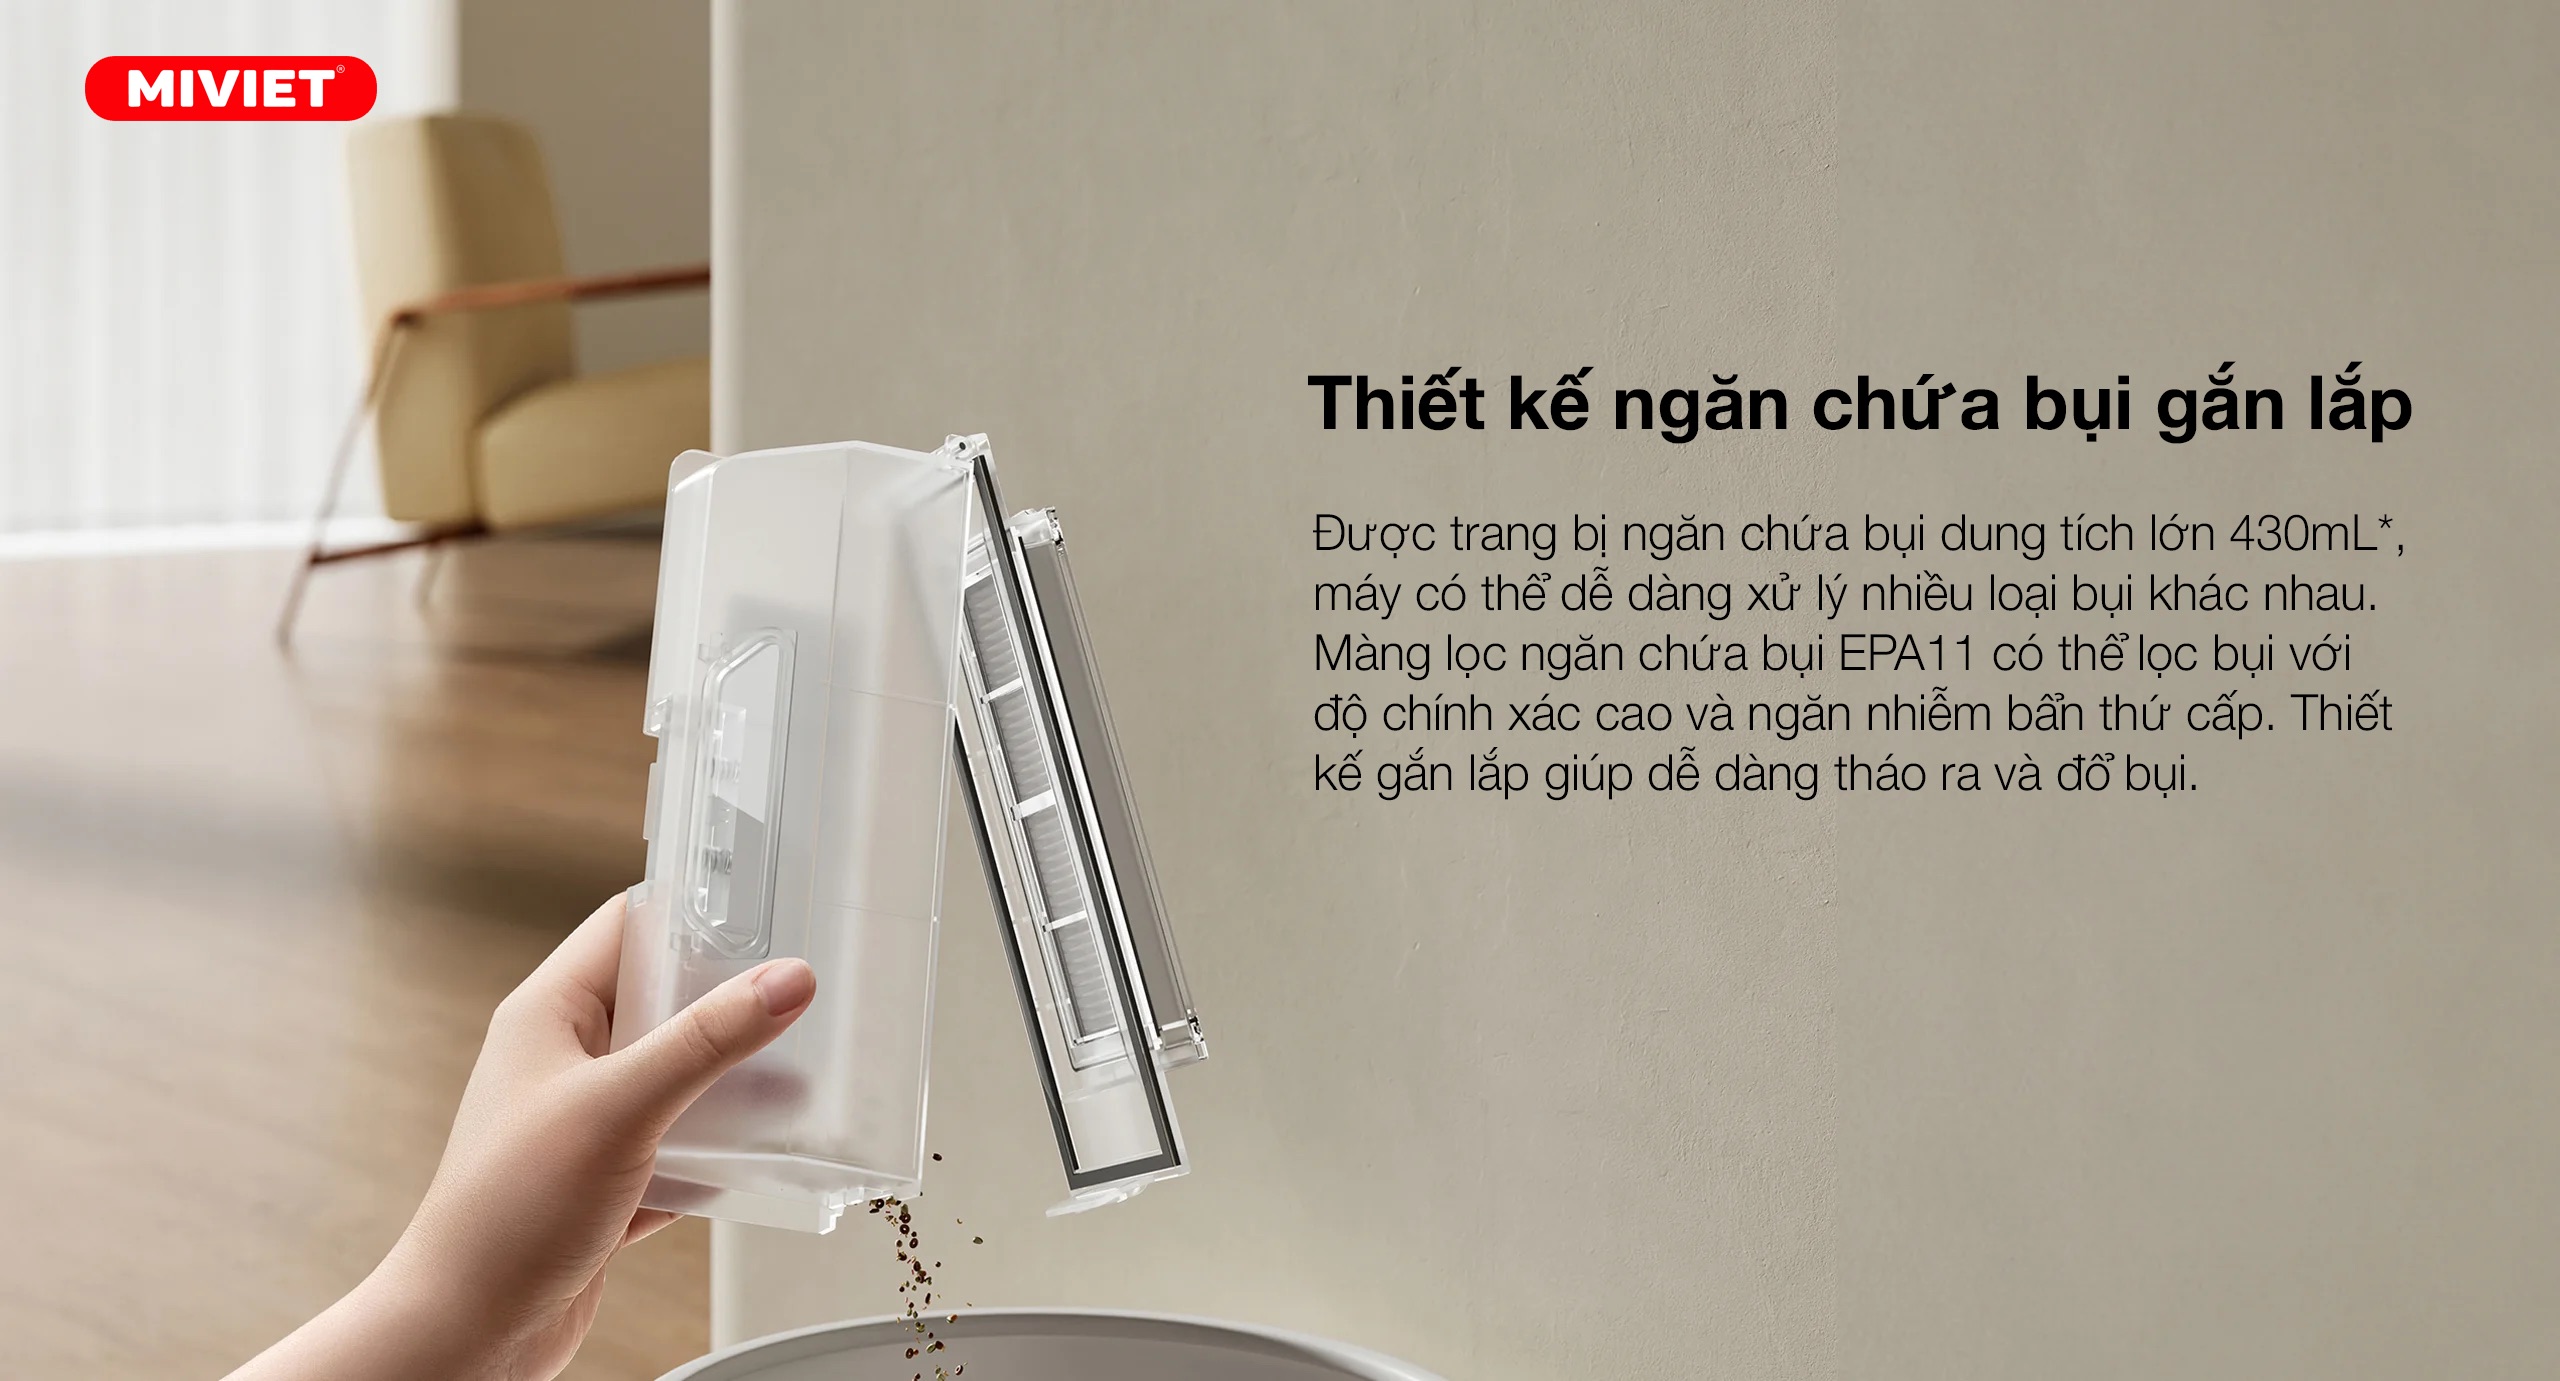 Robot hút bụi lau nhà Xiaomi Vacuum X20 - Bản Quốc Tế - BH 12 tháng